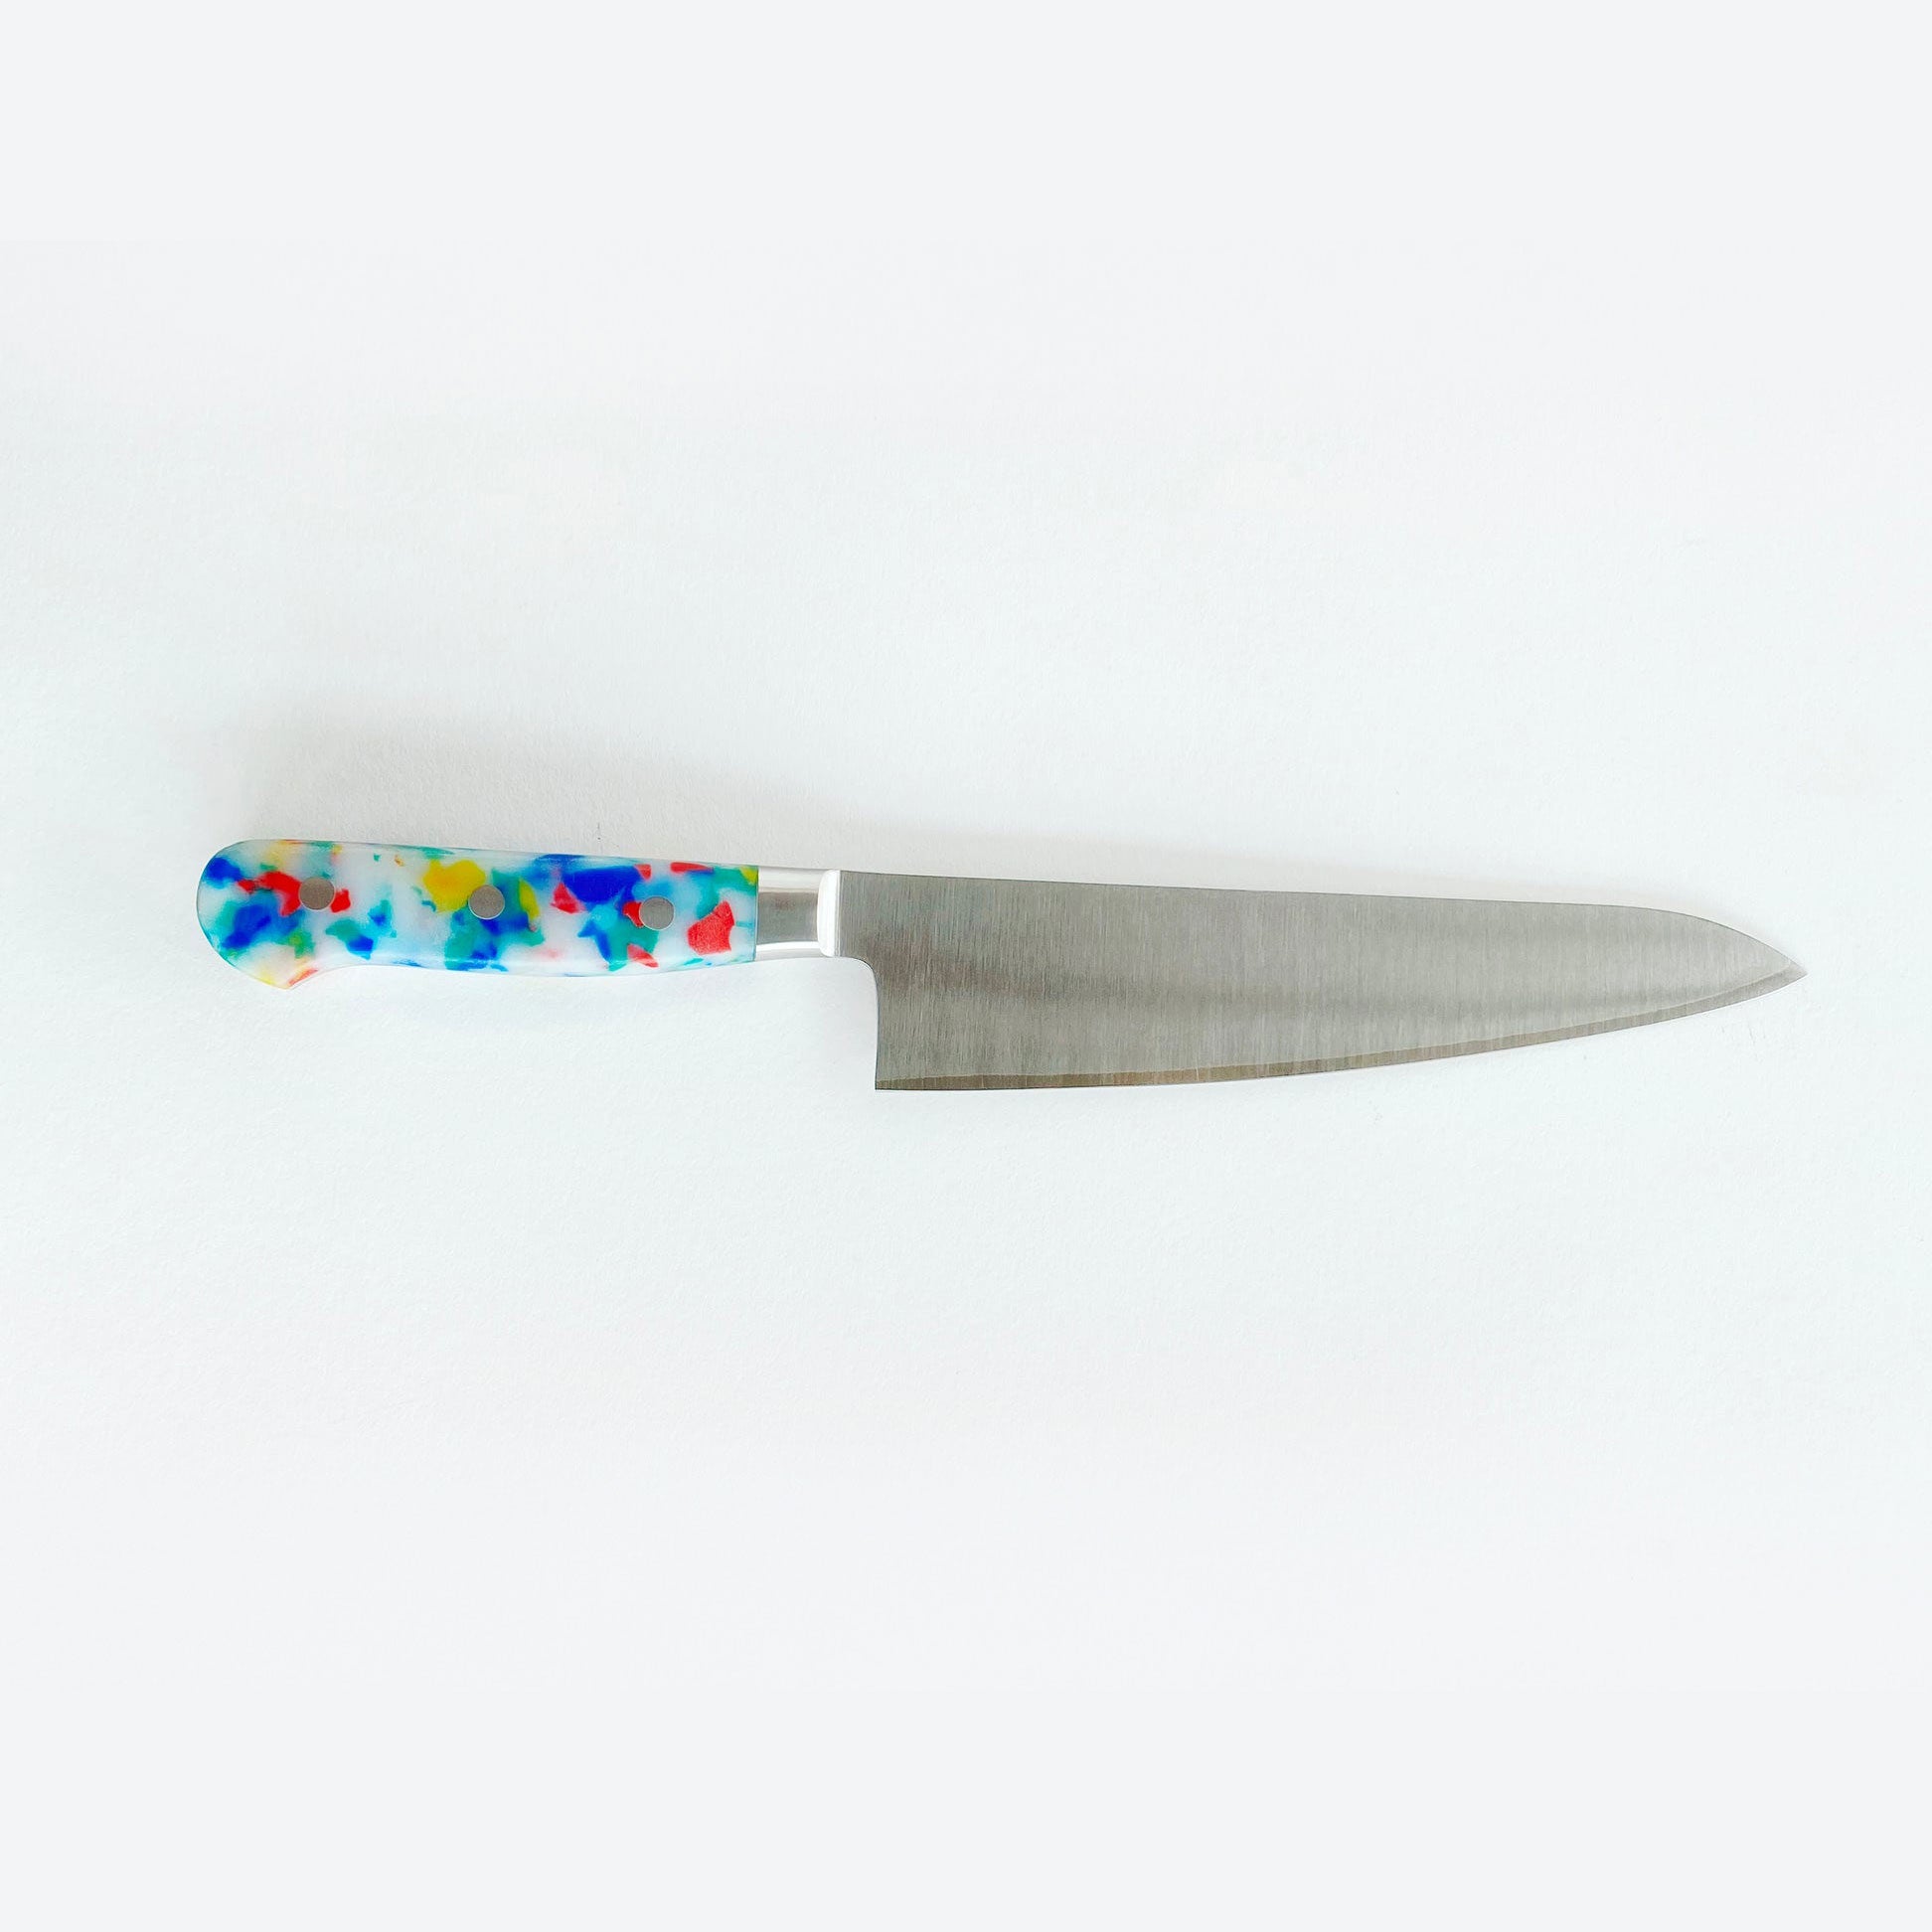 Fredericks and Mae Chef's Knife - Multi Confetti